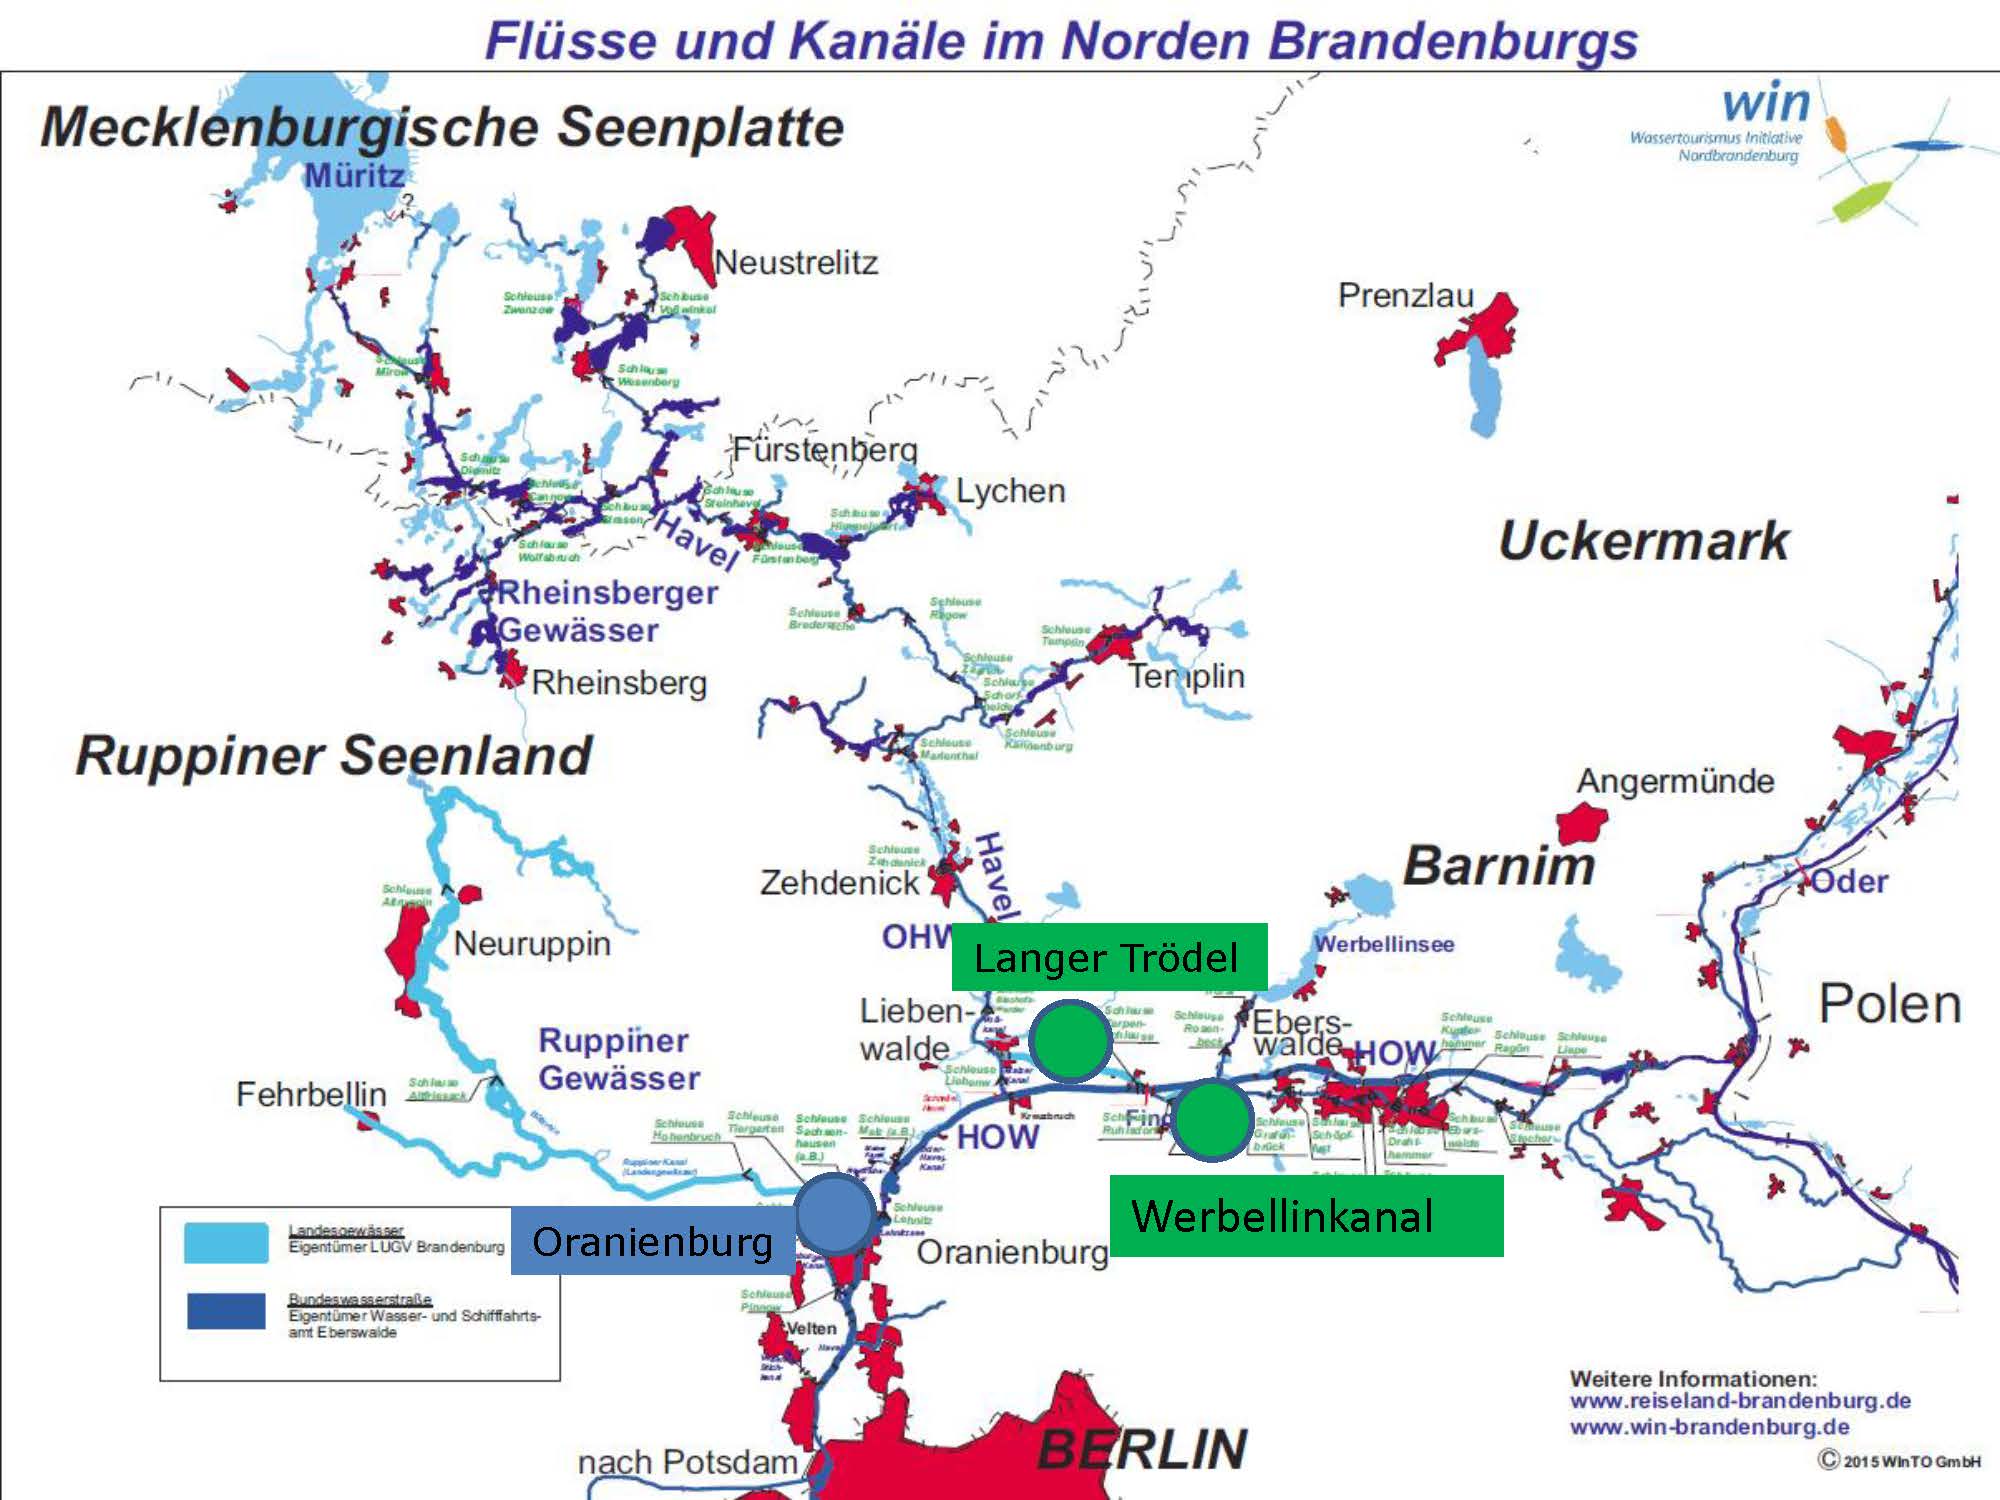 Flüsse und Kanäle im Norden Brandenburgs